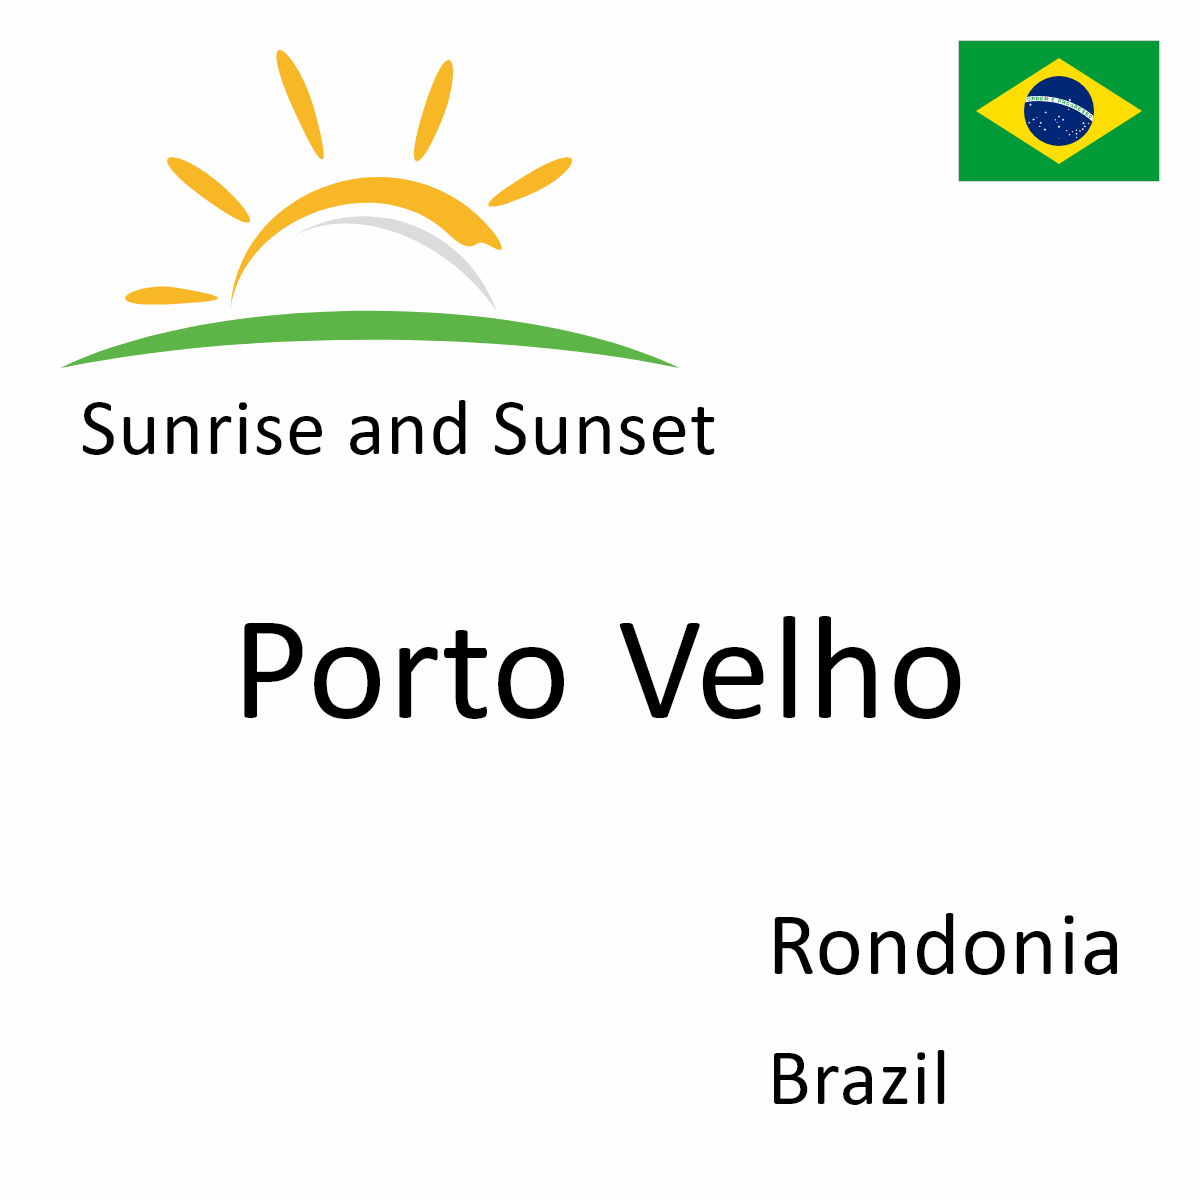 Rondônia, Brazil